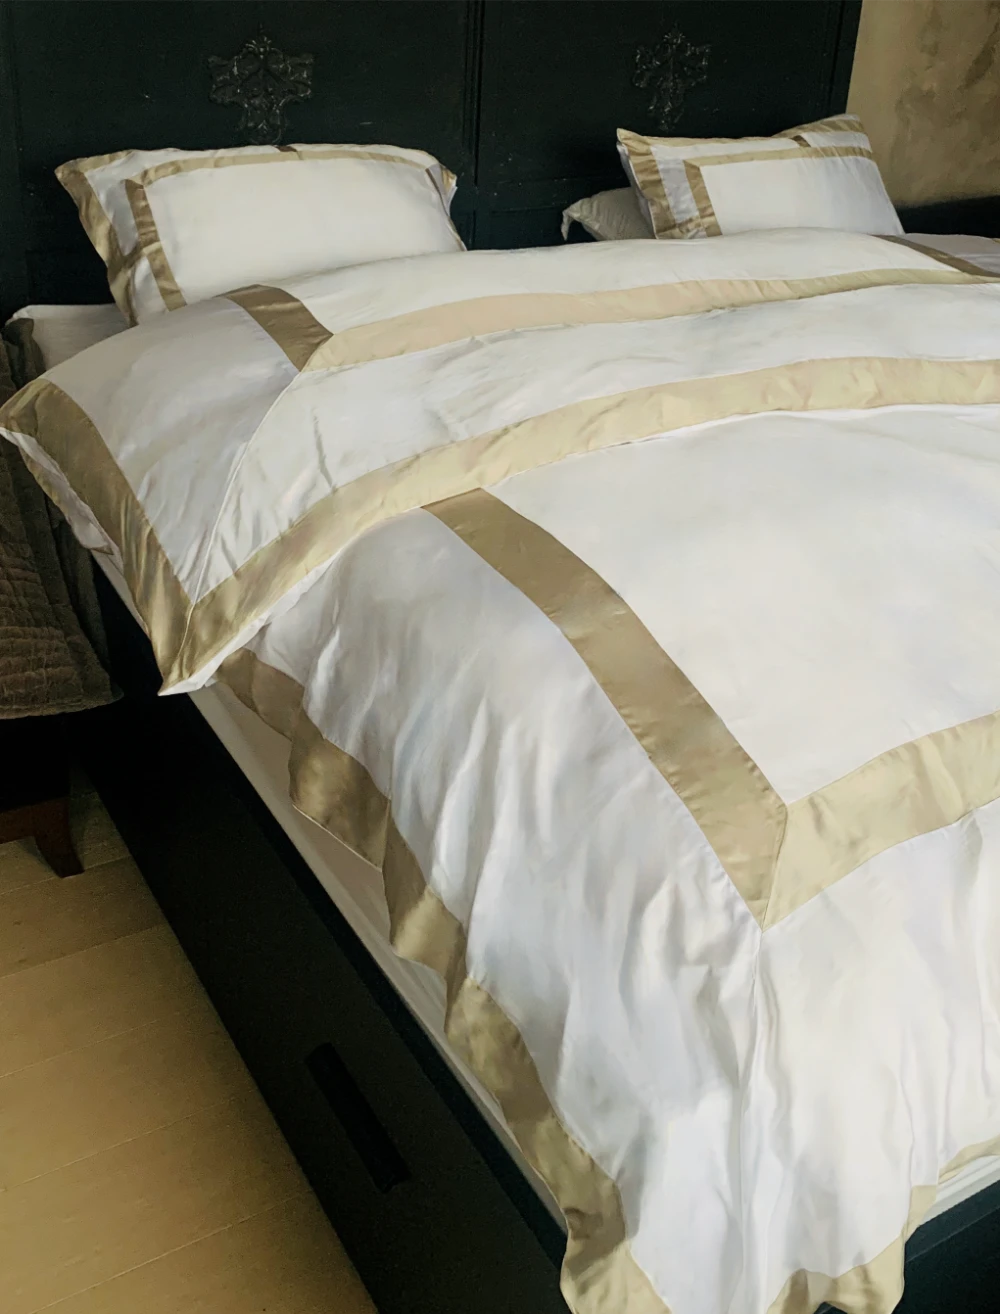 Frame bambus sengetøy beige hvitt miljø oppredd